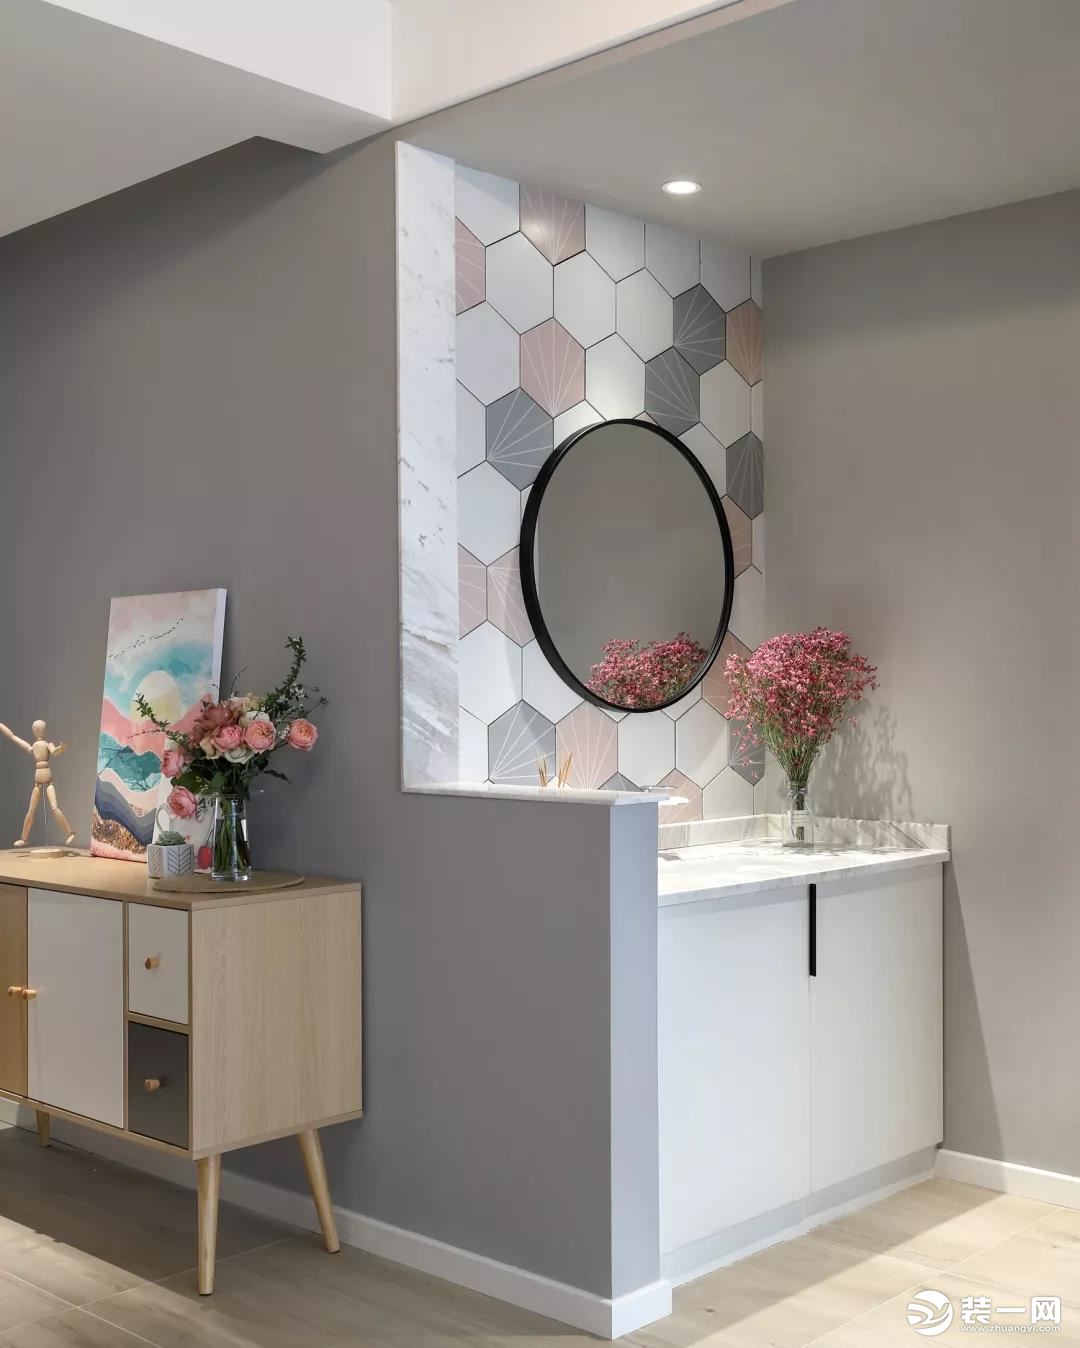 公卫的洗手盆设置在过道区域，以矮墙为隔断，墙面在灰白粉色的六边砖搭配下，挂上一面圆形的黑框镜子，布置